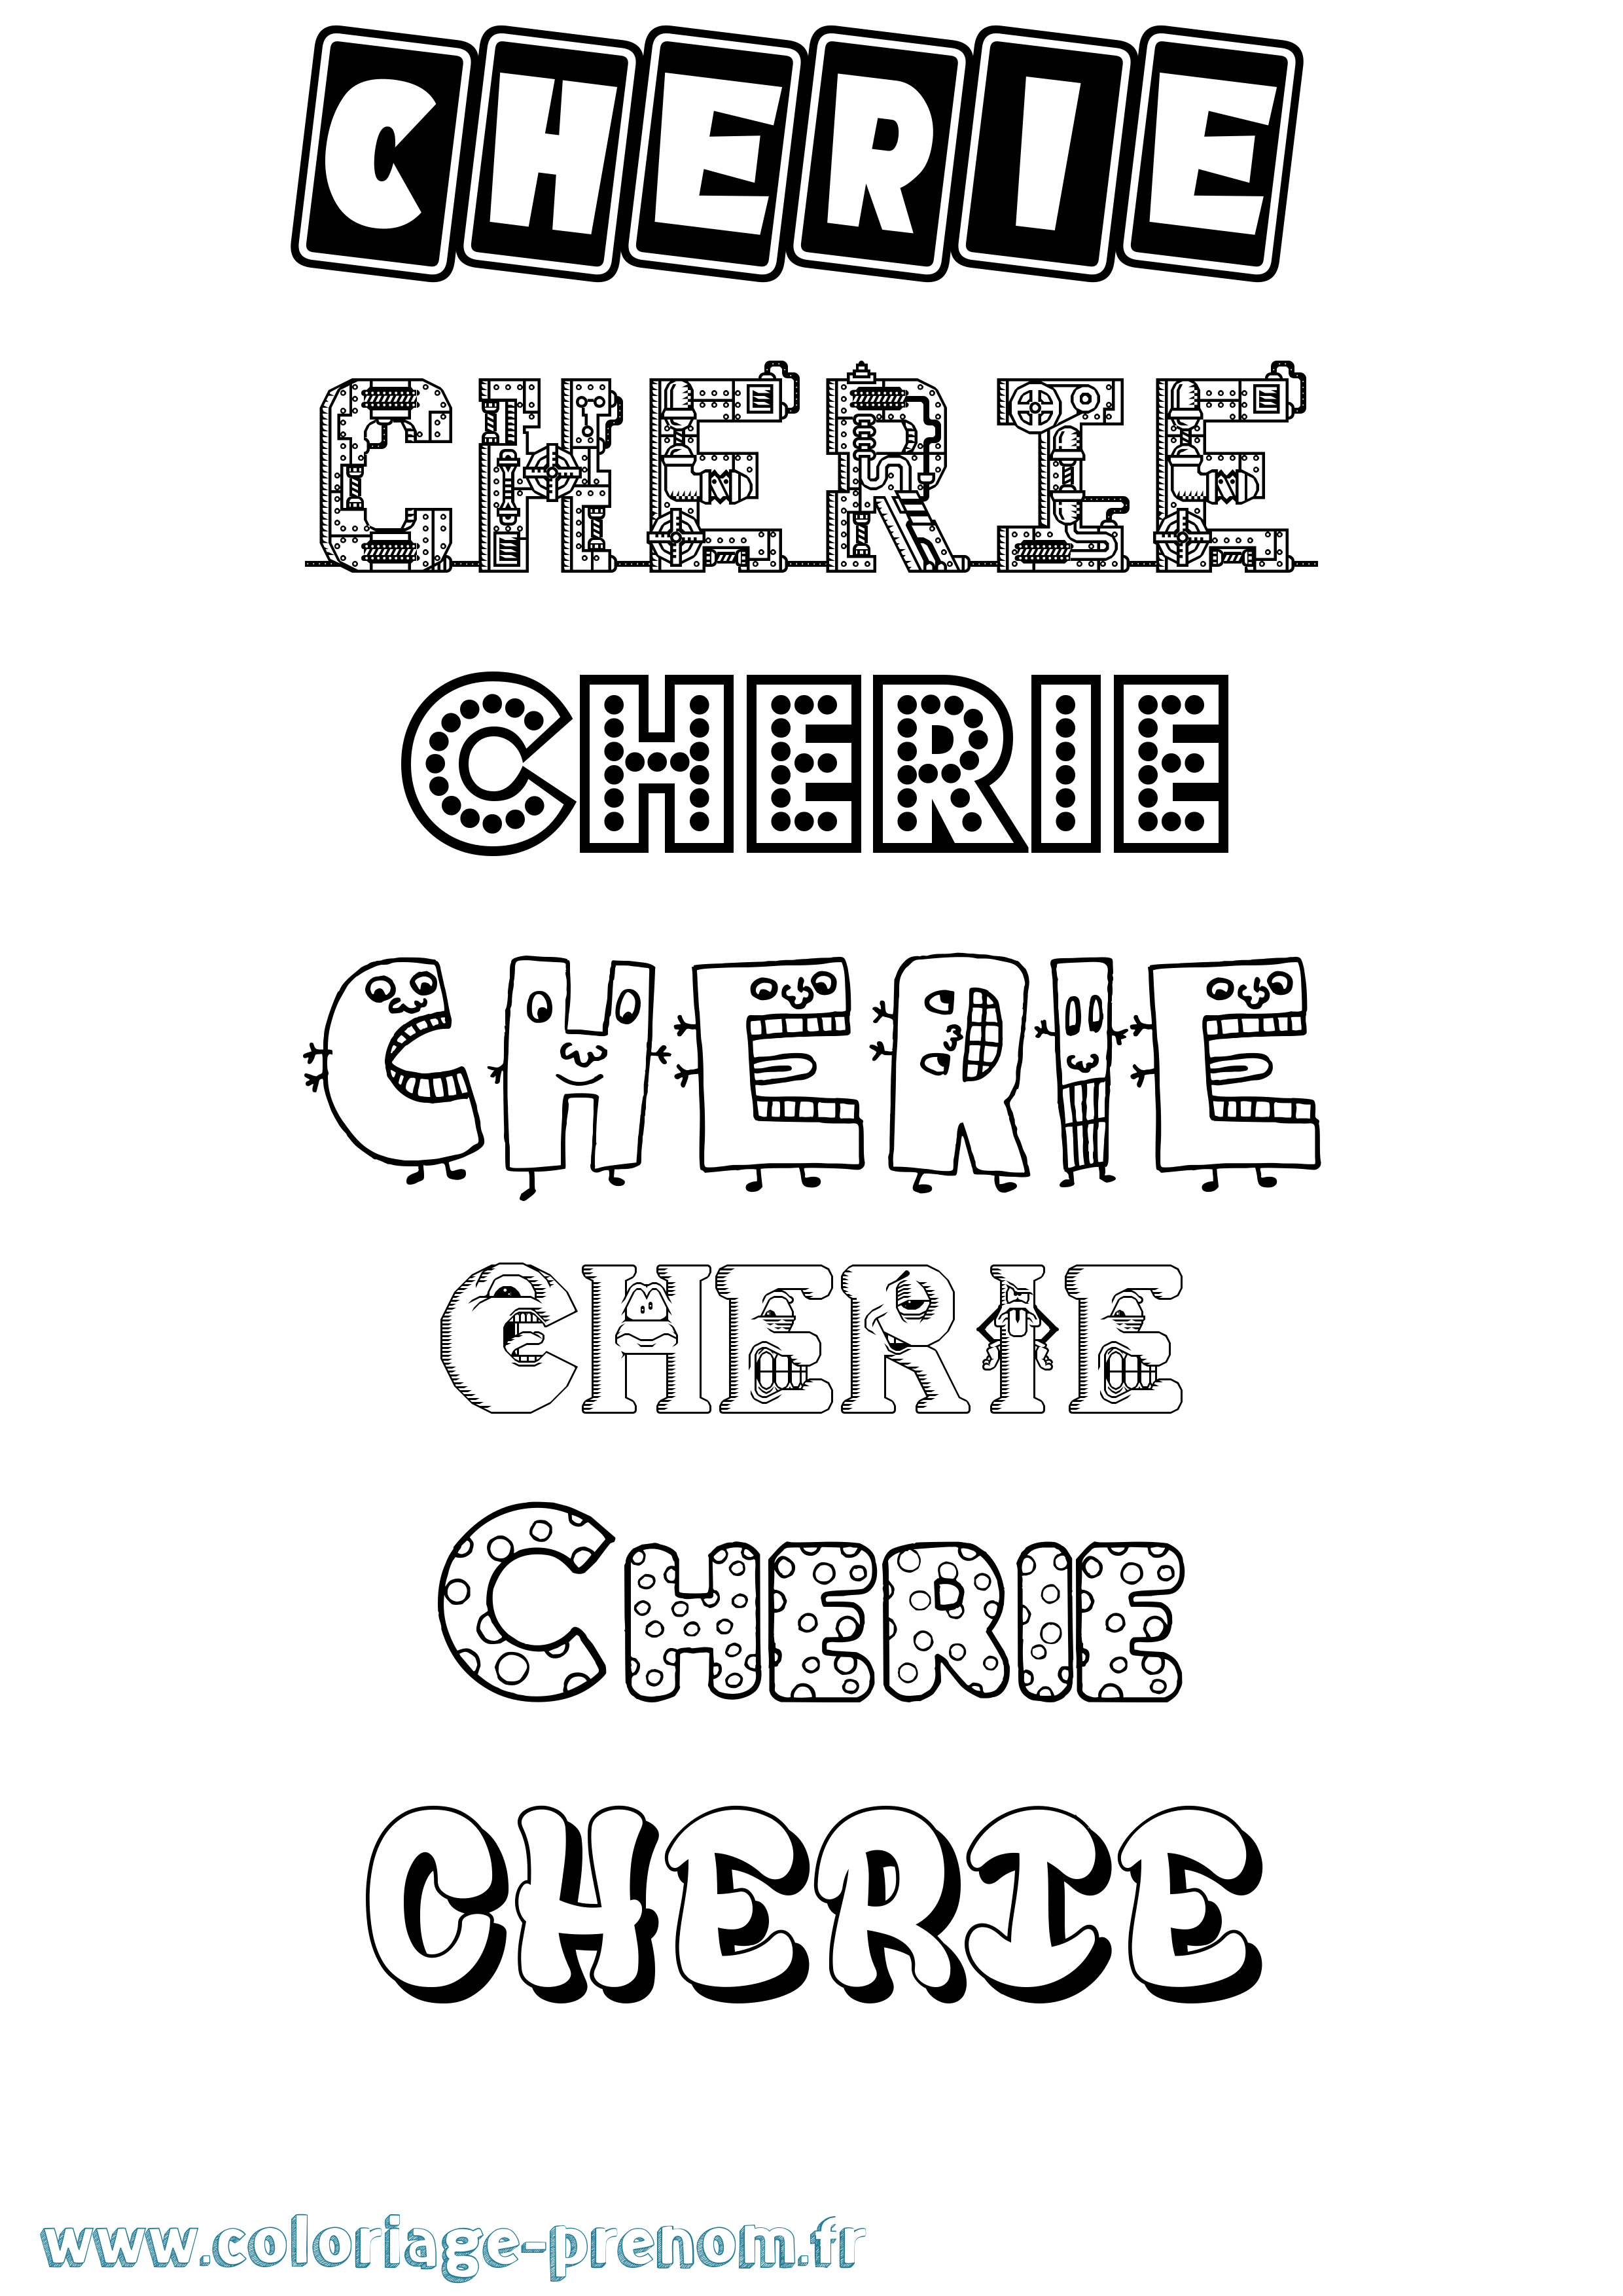 Coloriage prénom Cherie Fun